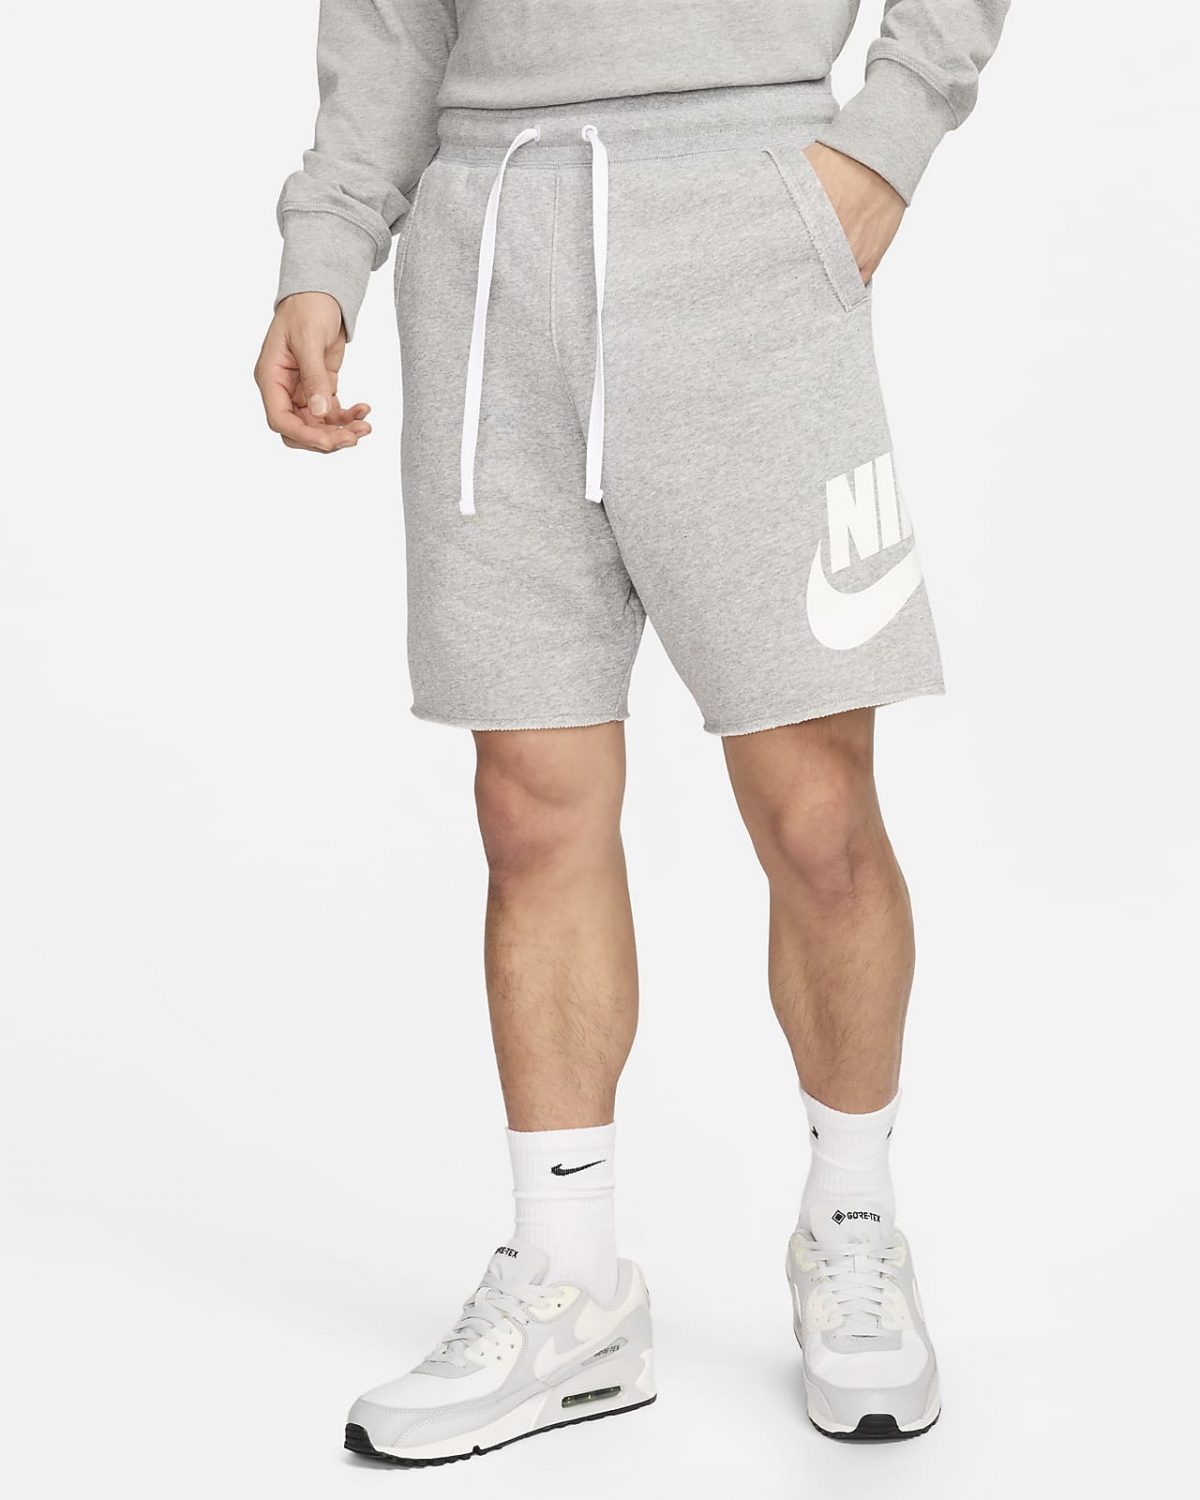 Мужские шорты Nike Club белые фото